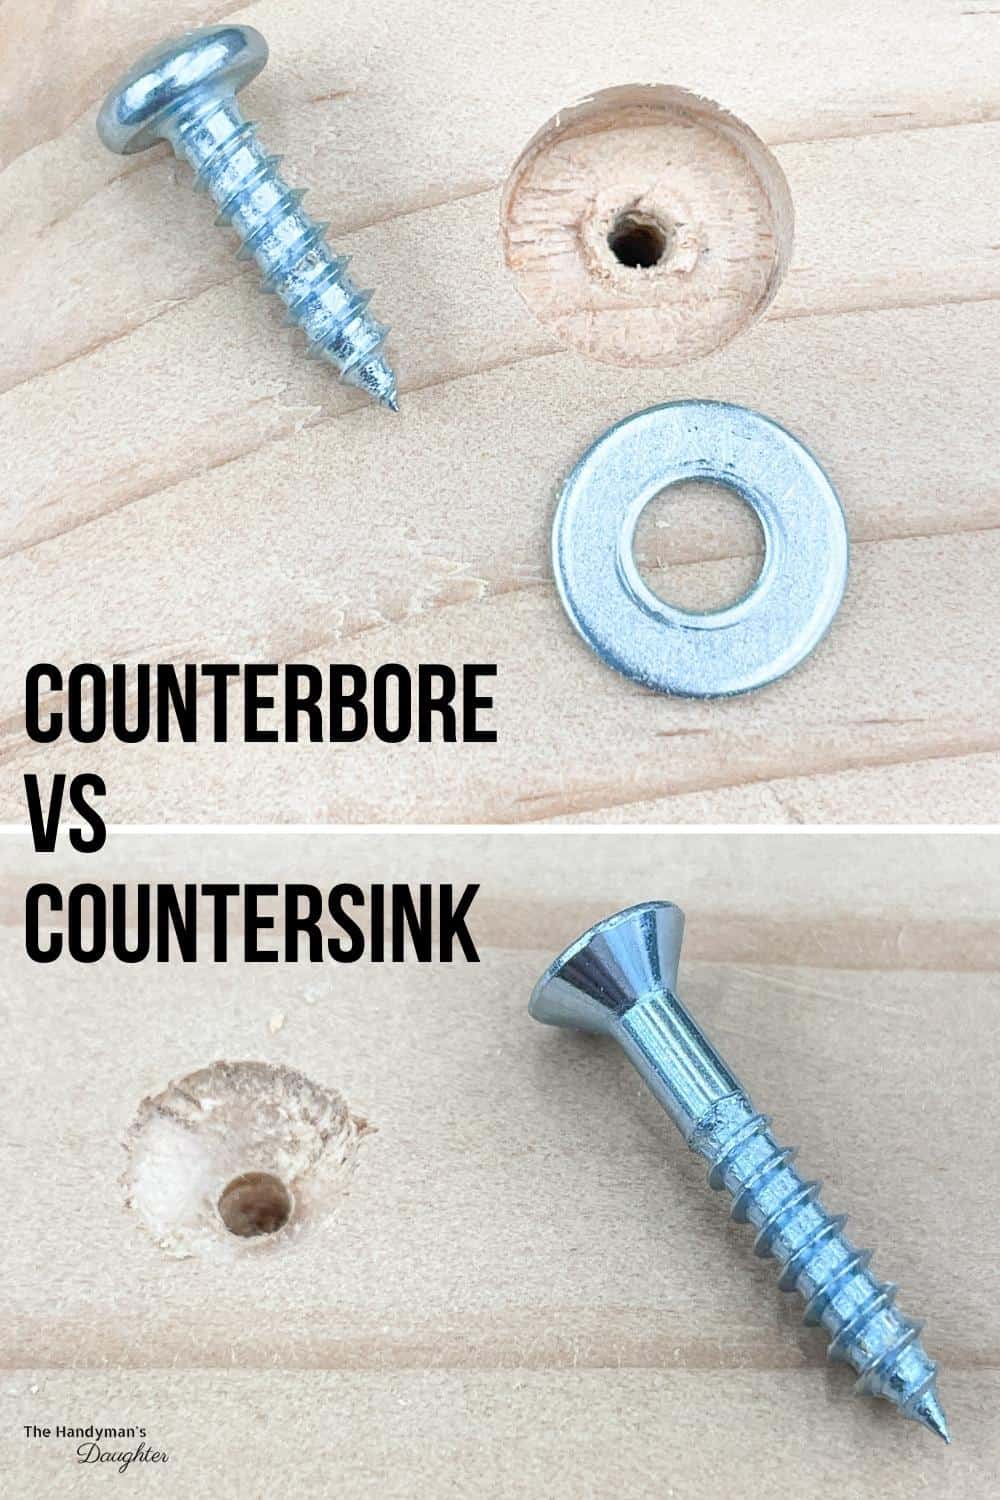 Comparison of counterbore vs countersink holes